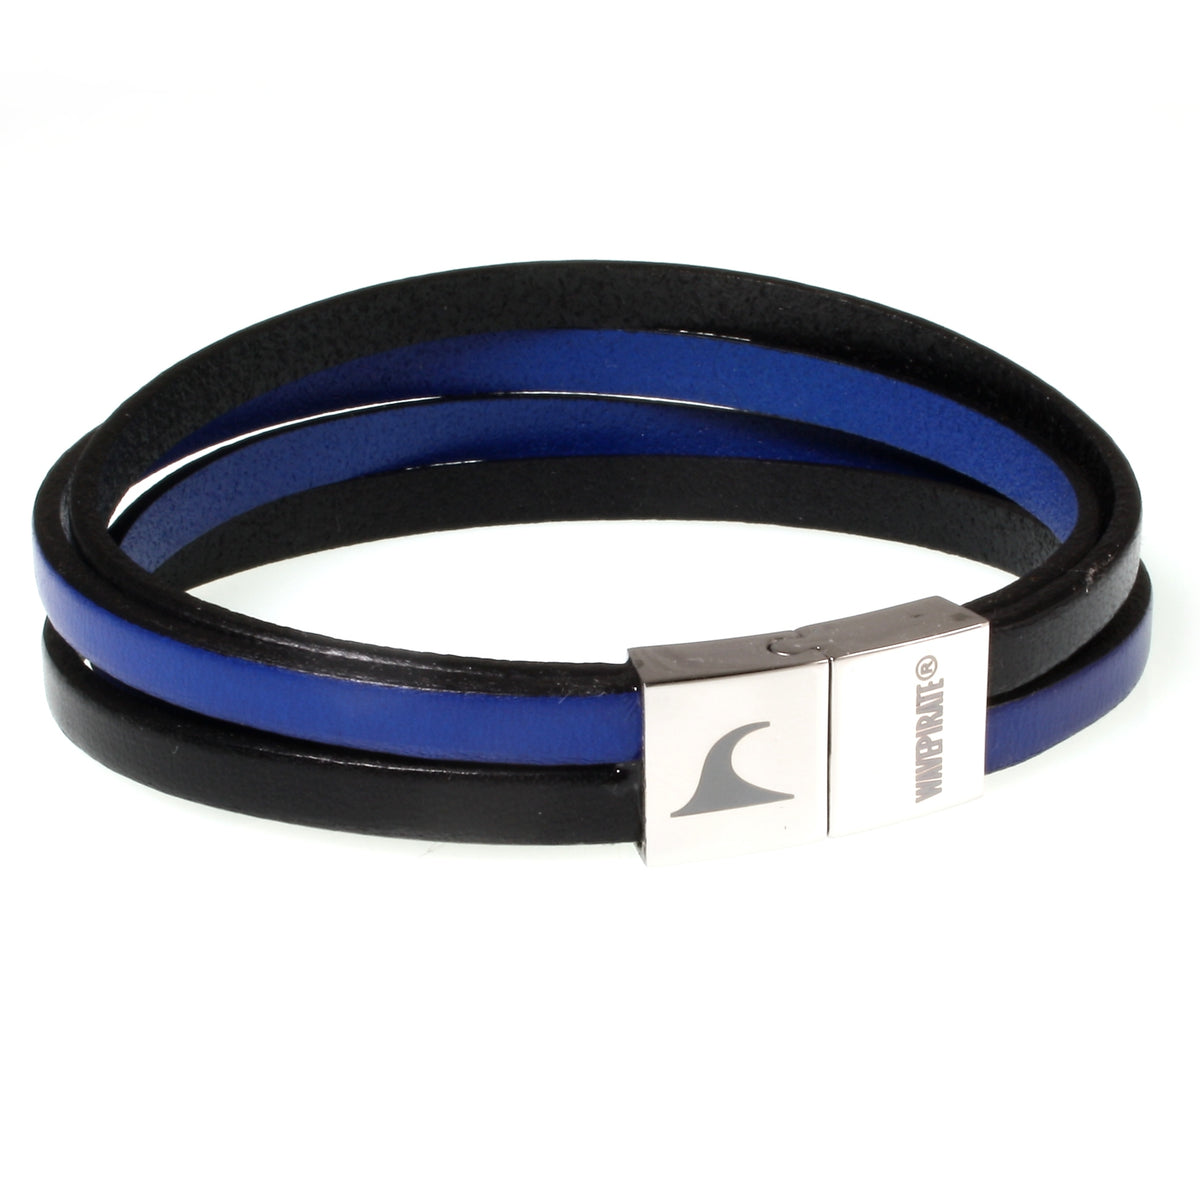 Herren-Leder-Armband-Twist-schwarz-blau-flach-Edelstahlverschluss-vorn-wavepirate-shop